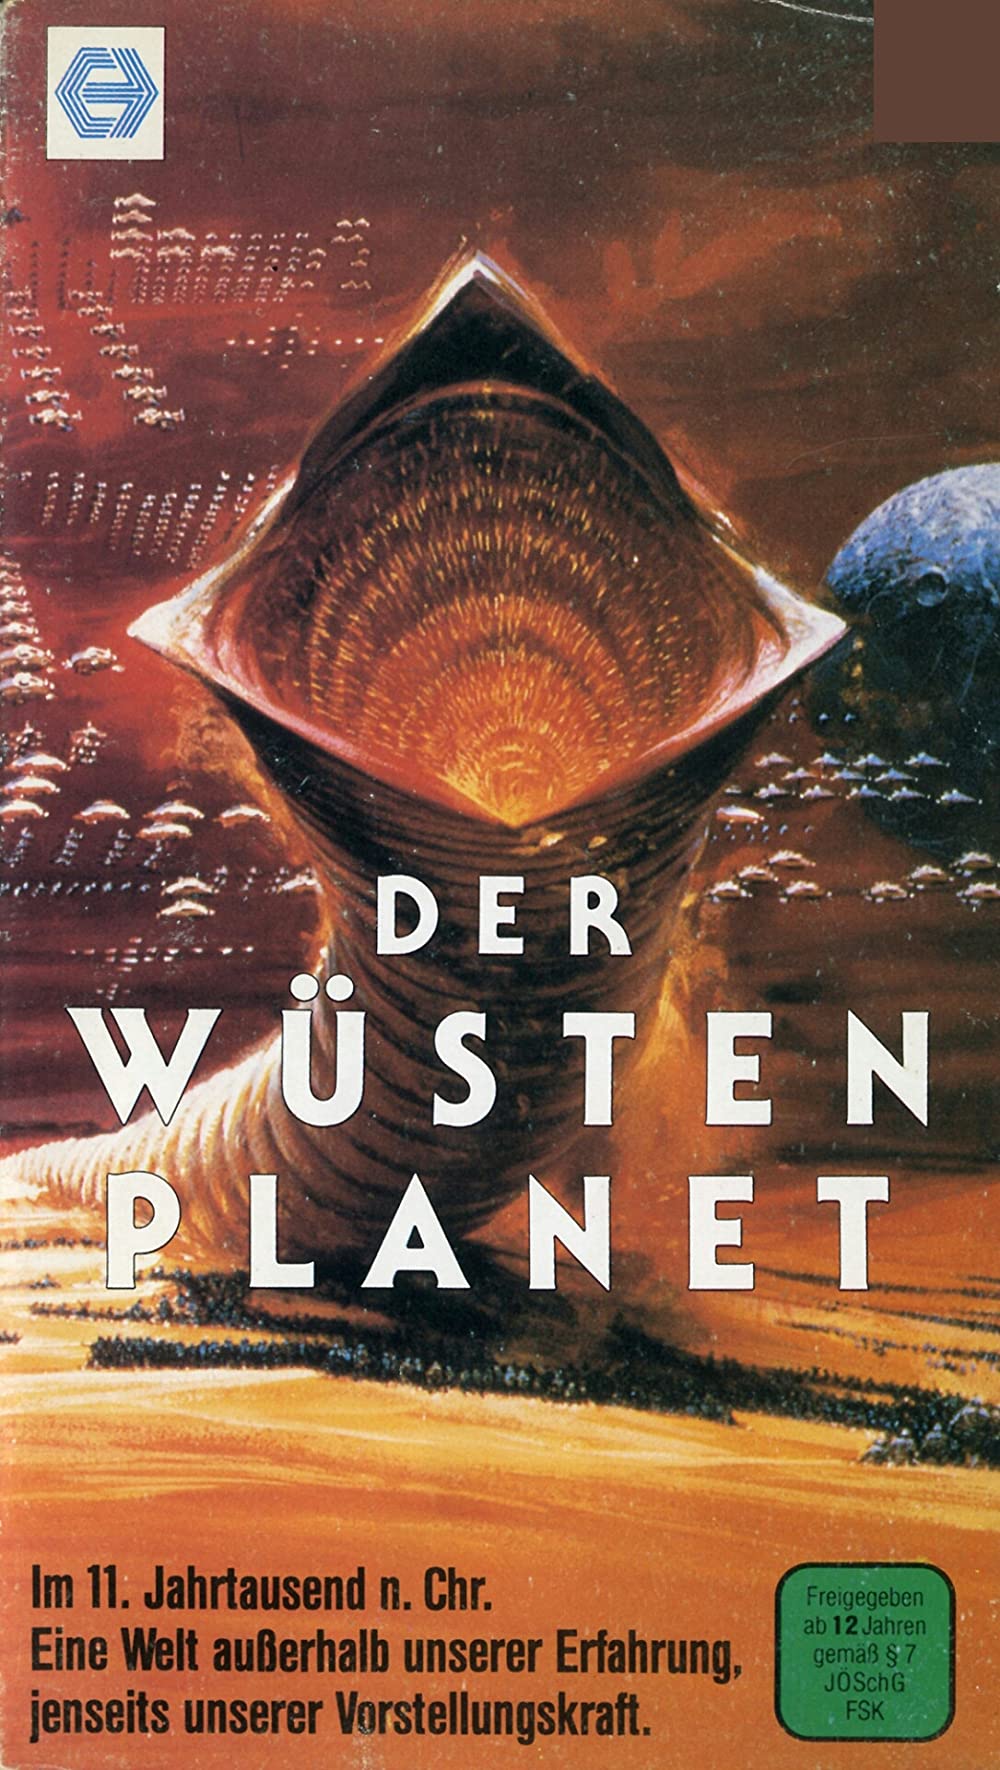 Filmbeschreibung zu Dune - Der Wüstenplanet